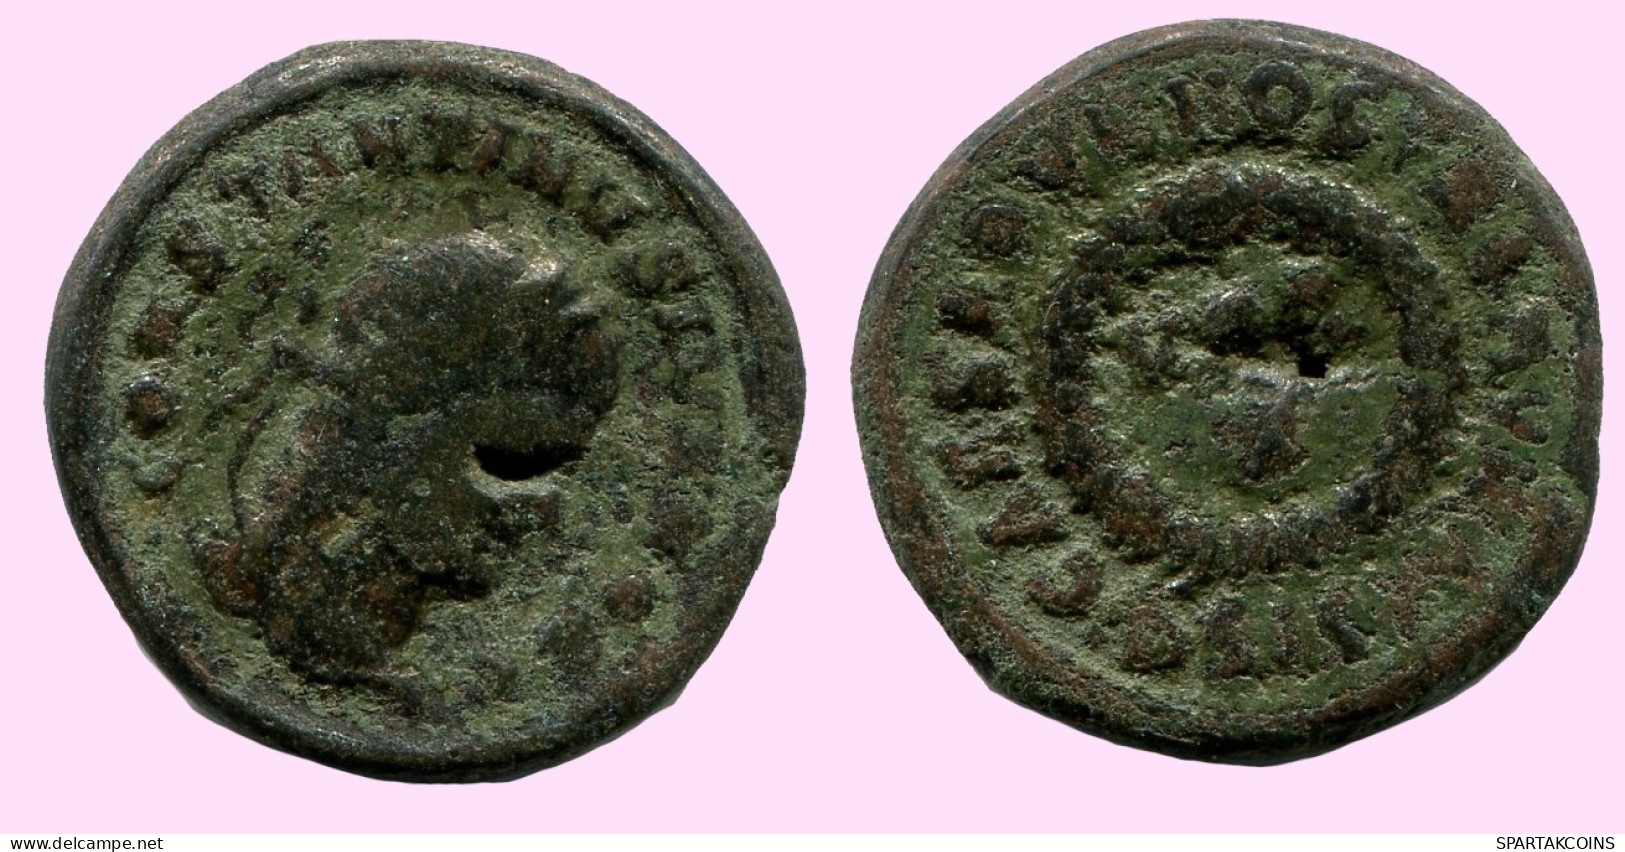 CONSTANTINE I Authentische Antike RÖMISCHEN KAISERZEIT Münze #ANC12234.12.D.A - El Impero Christiano (307 / 363)